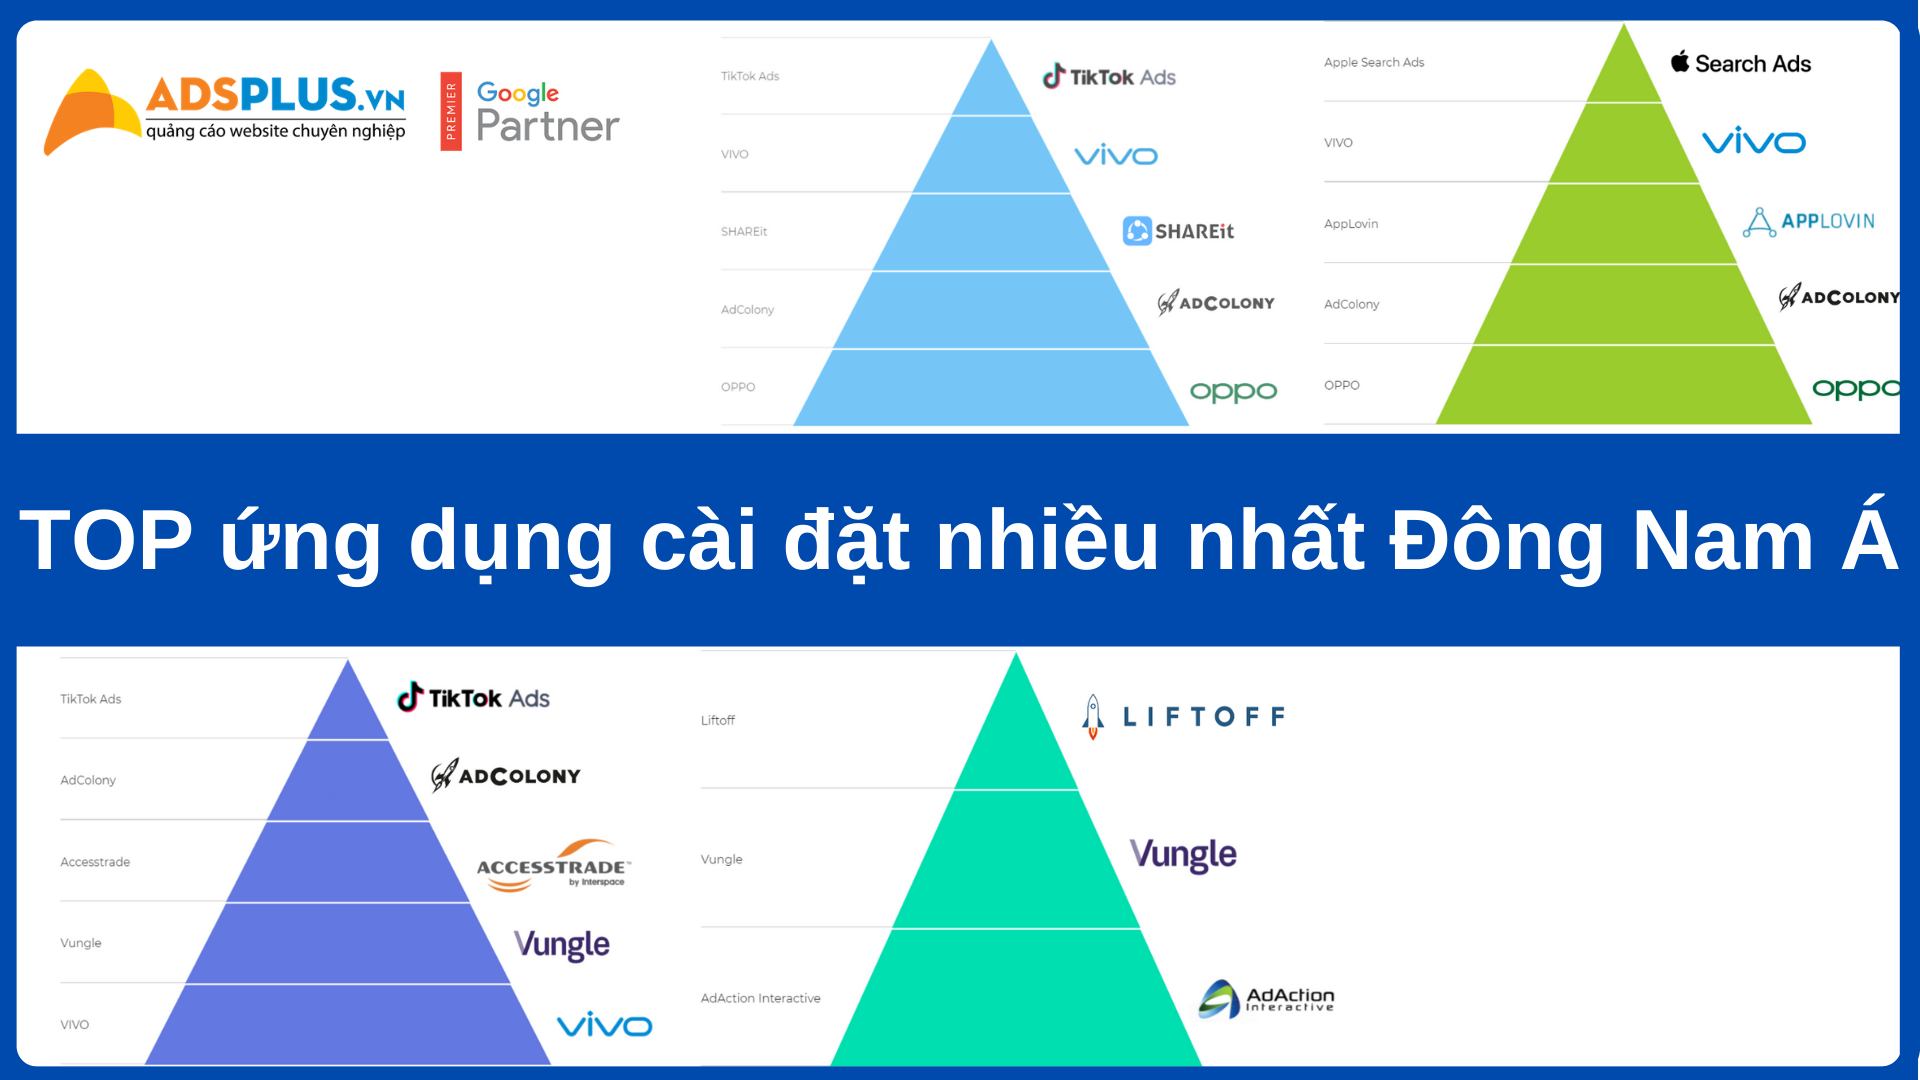 Top ứng dụng cài đặt nhiều nhất Đông Nam Á